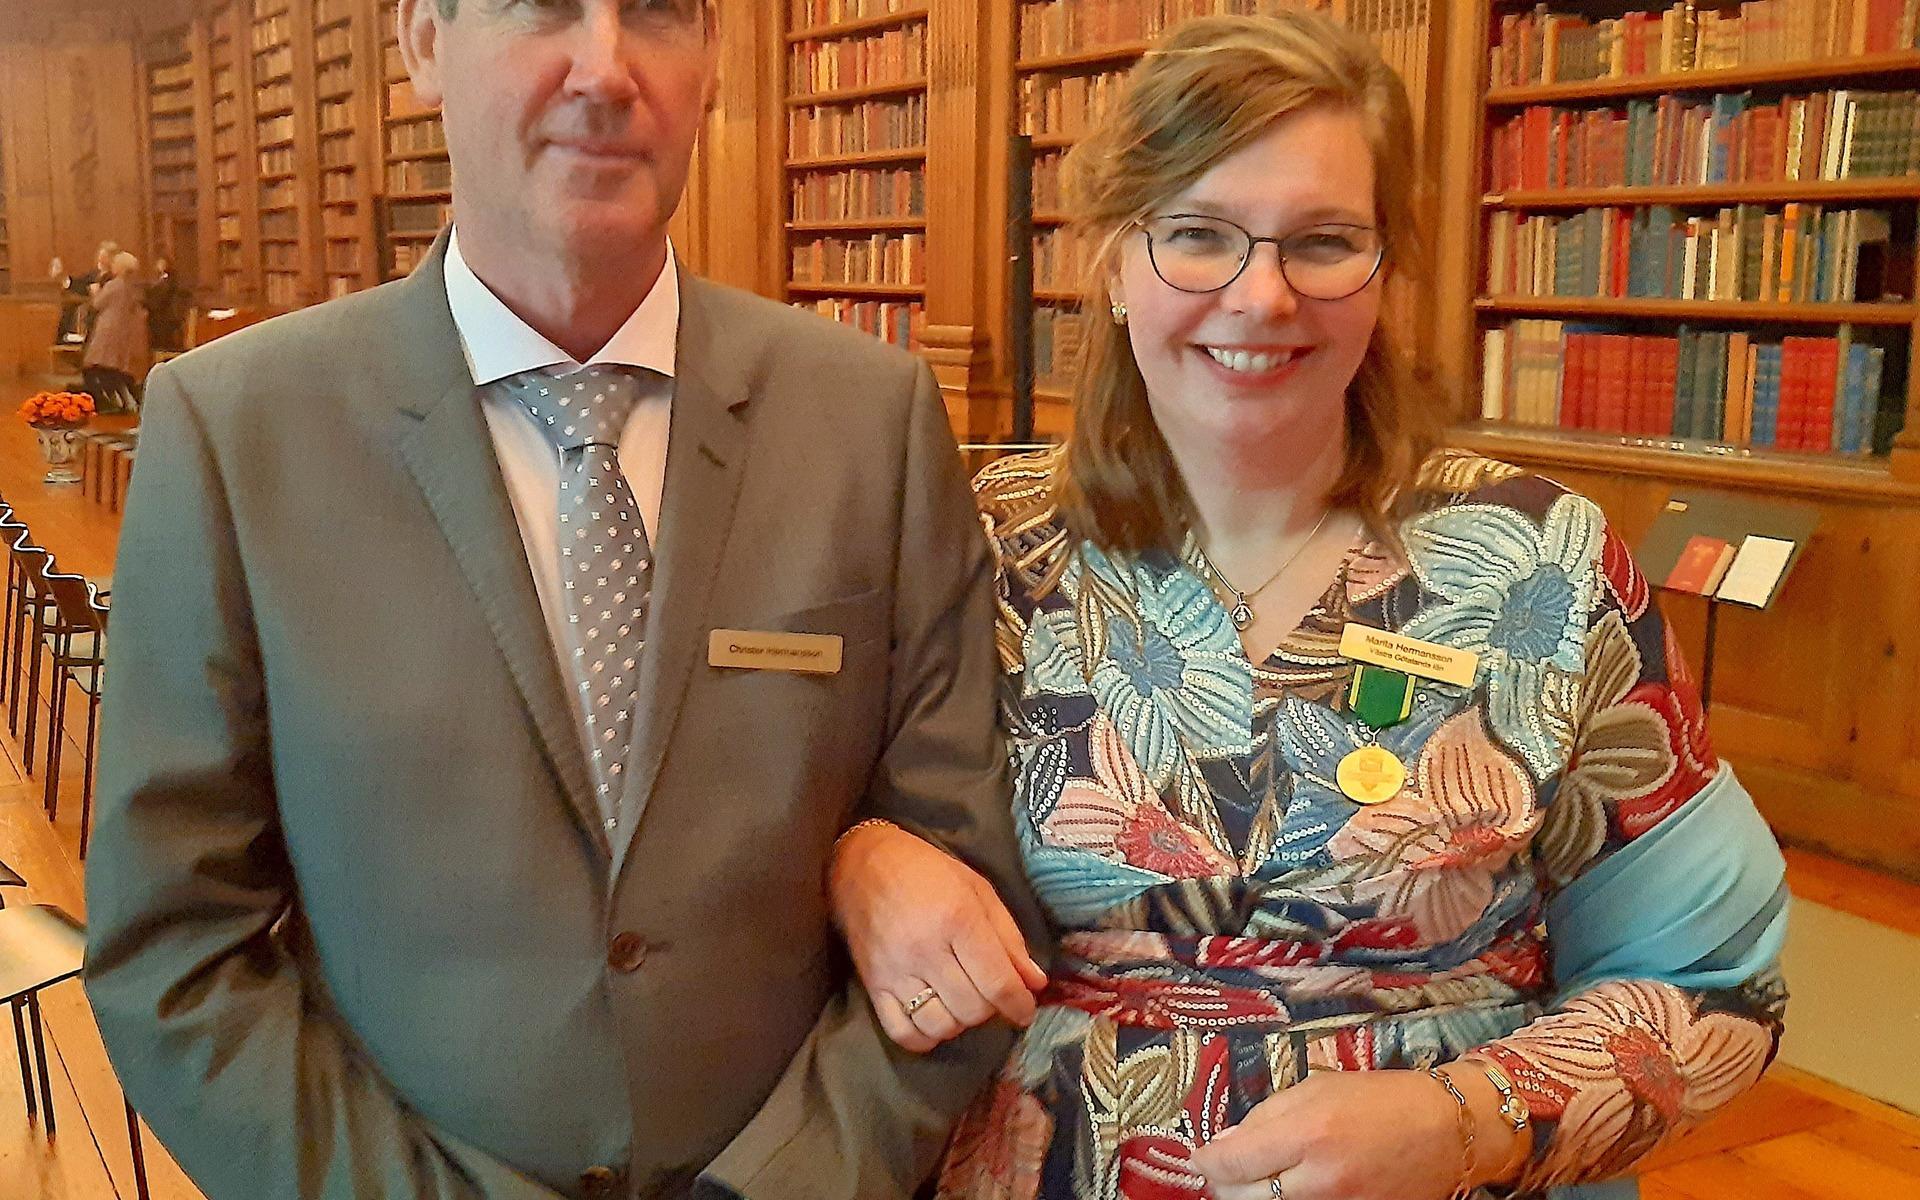 Marita Hermansson och hennes man Christer i kungliga biblioteket. De har just träffat kungen och Marita har fått ta emot medaljen.